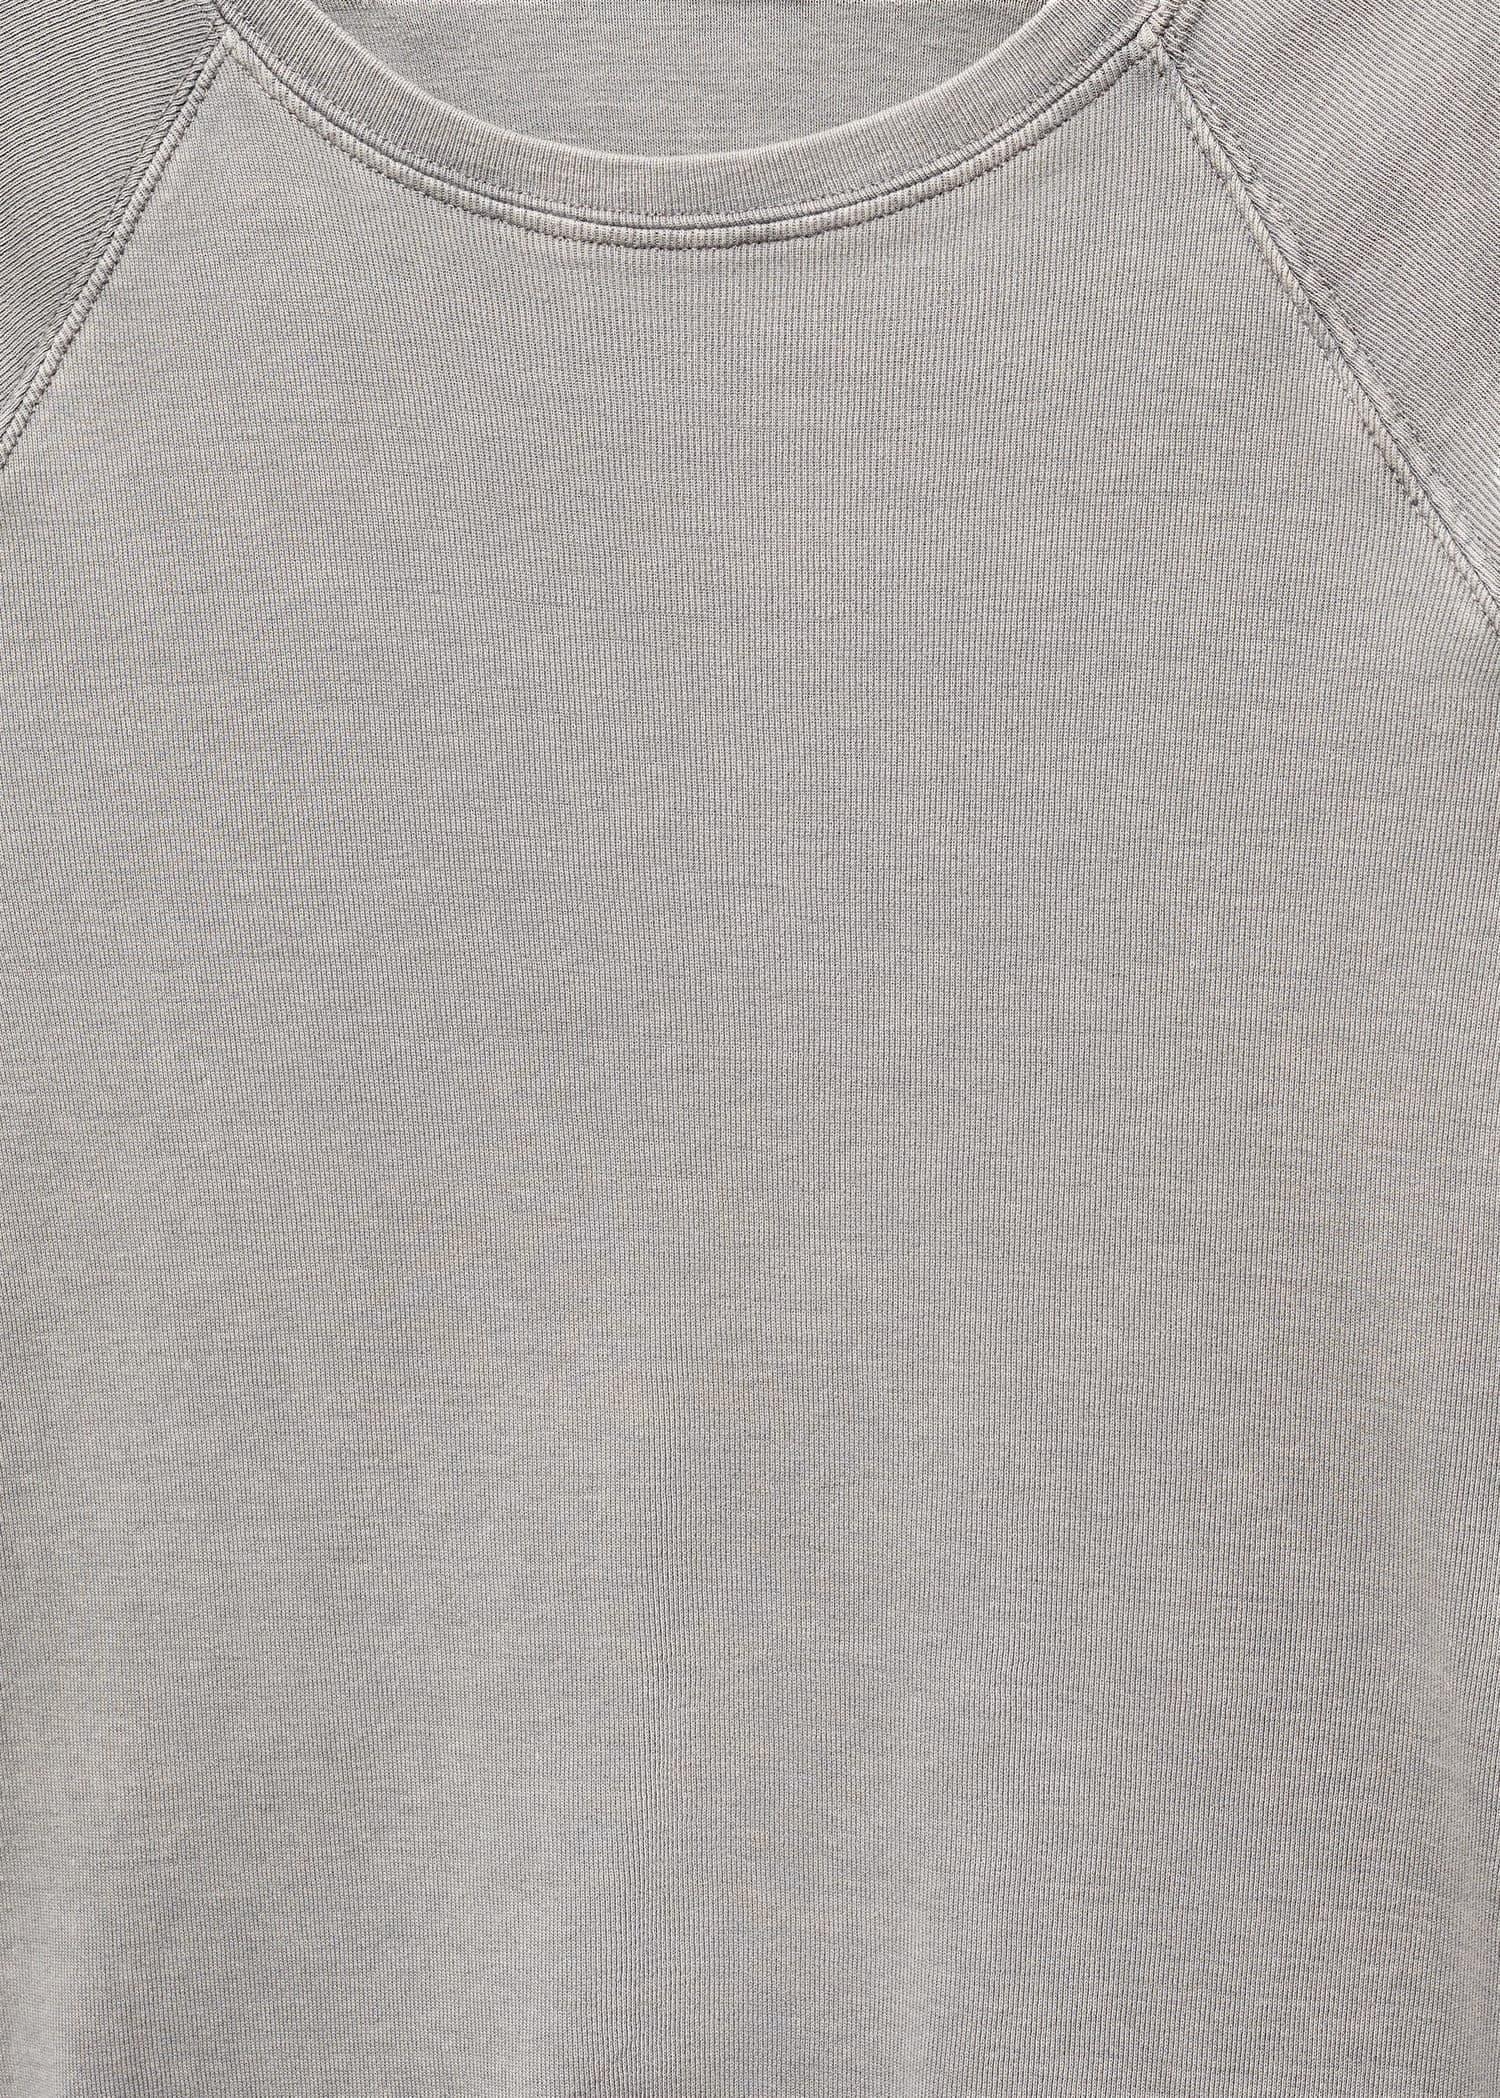 Mango - Grey Rounded Neck Cotton T-Shirt